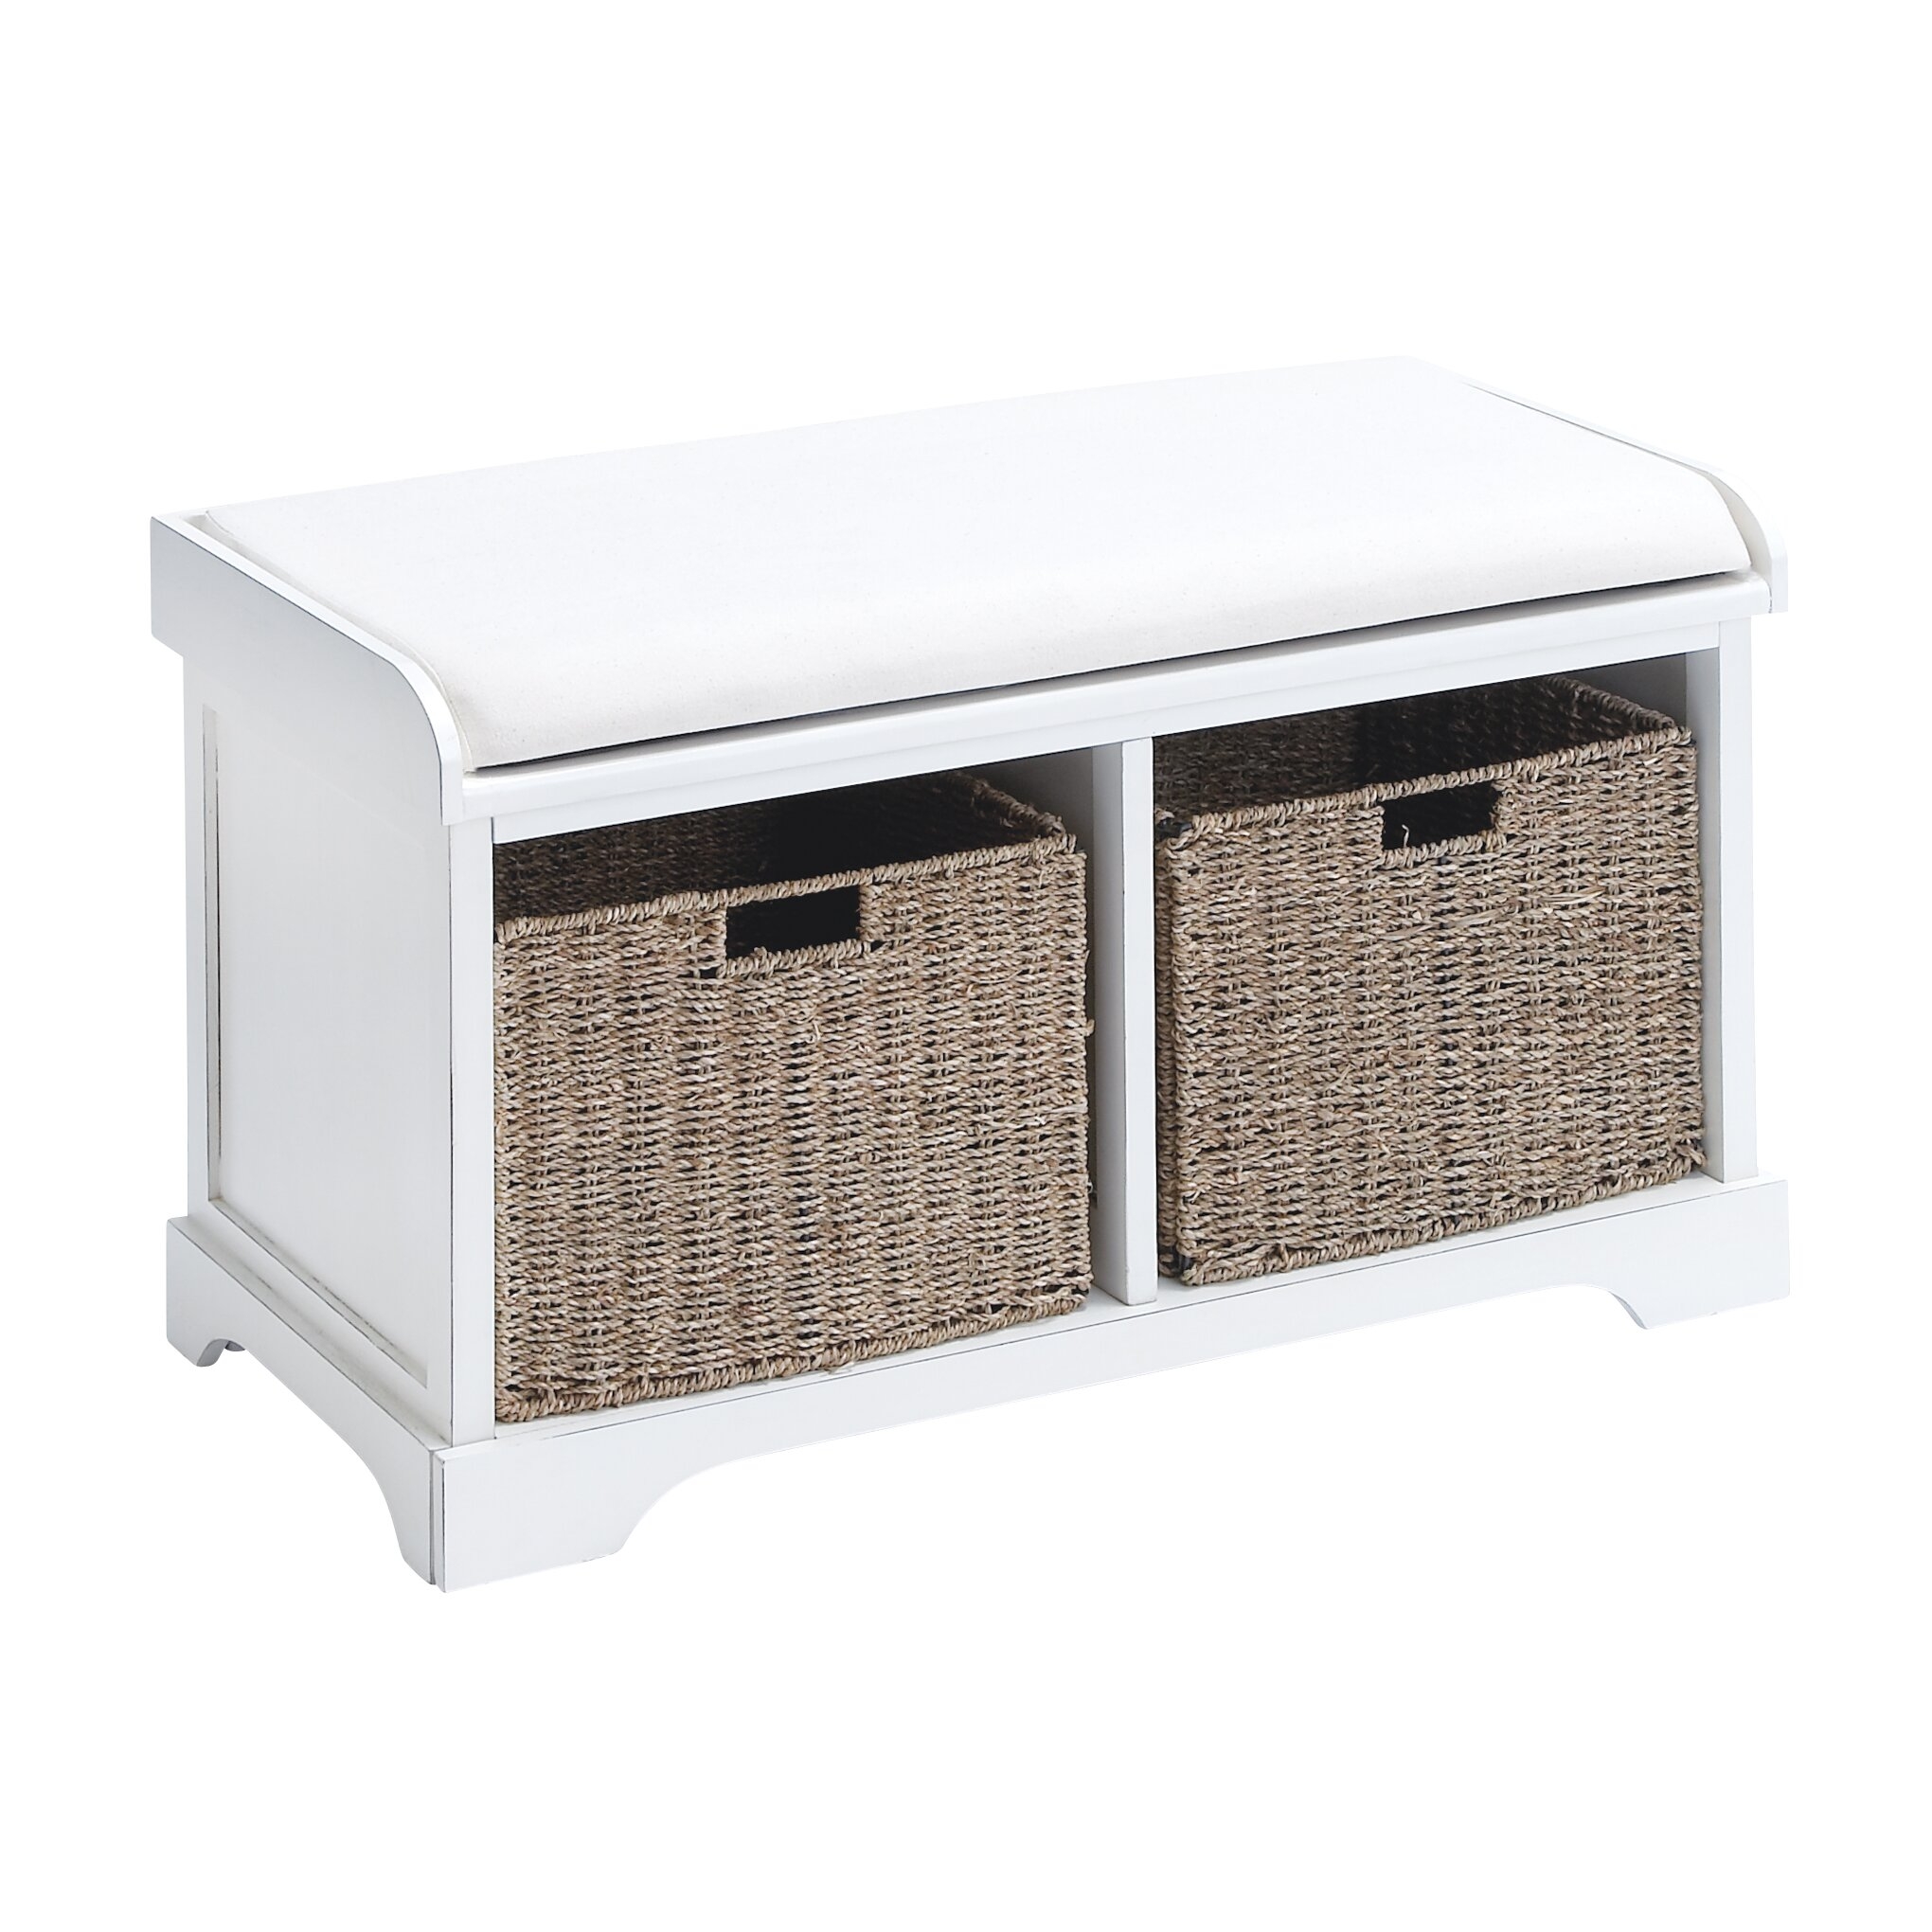 Woodland Import Wood Basket Bench with Huge Storage Capacity - White